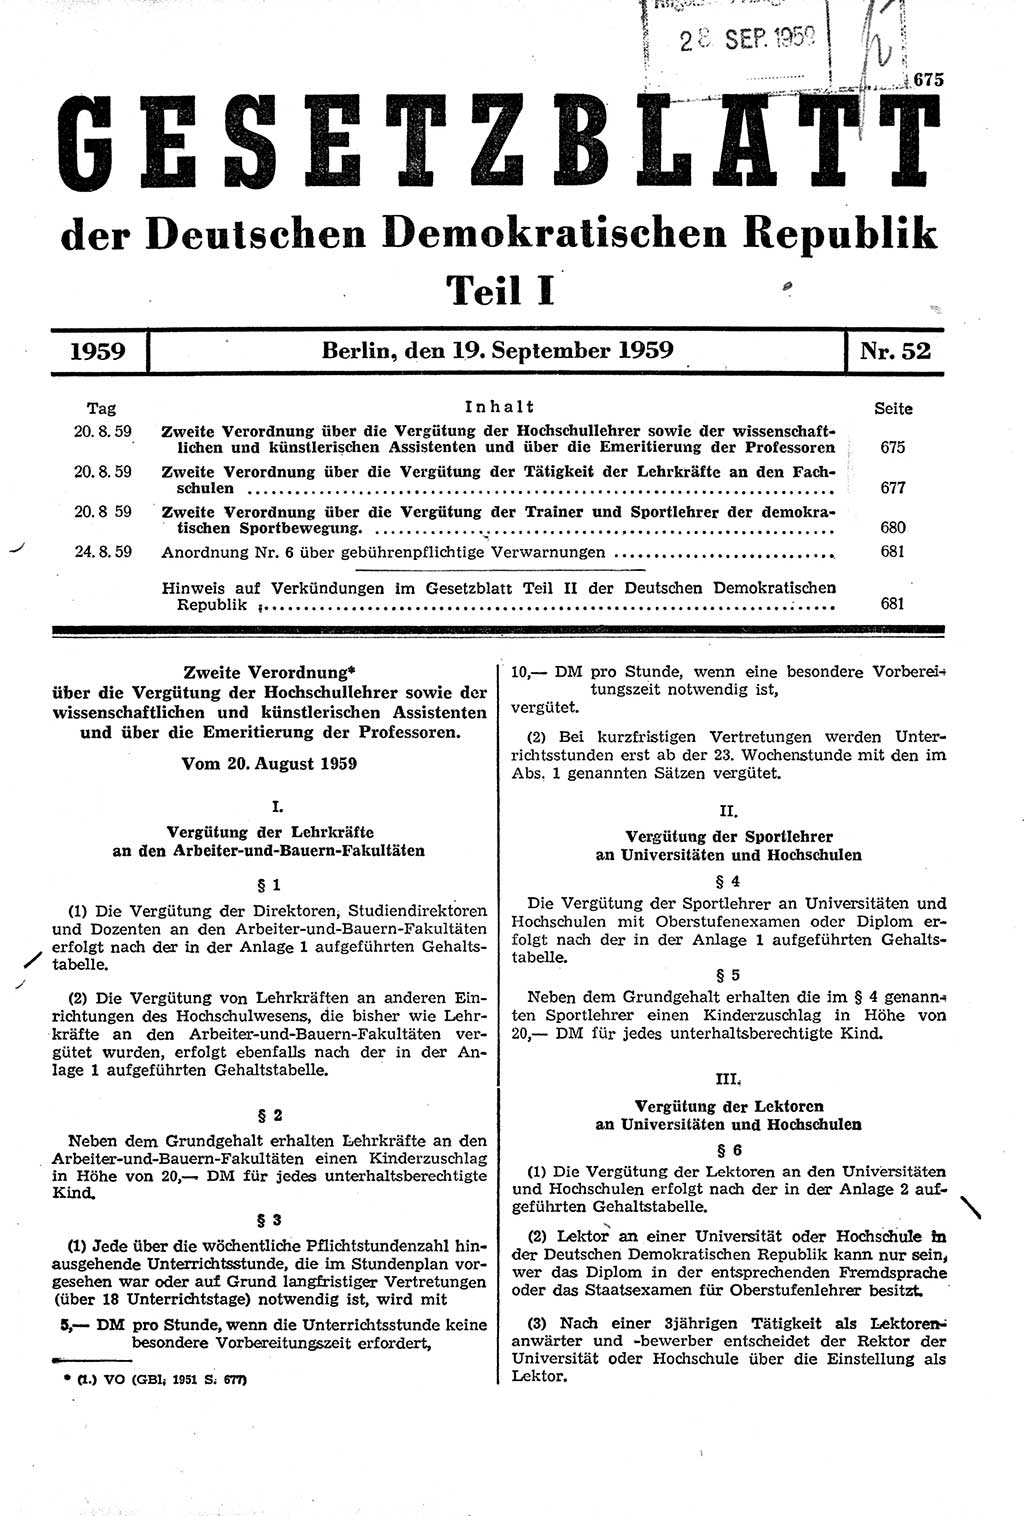 Gesetzblatt (GBl.) der Deutschen Demokratischen Republik (DDR) Teil Ⅰ 1959, Seite 675 (GBl. DDR Ⅰ 1959, S. 675)